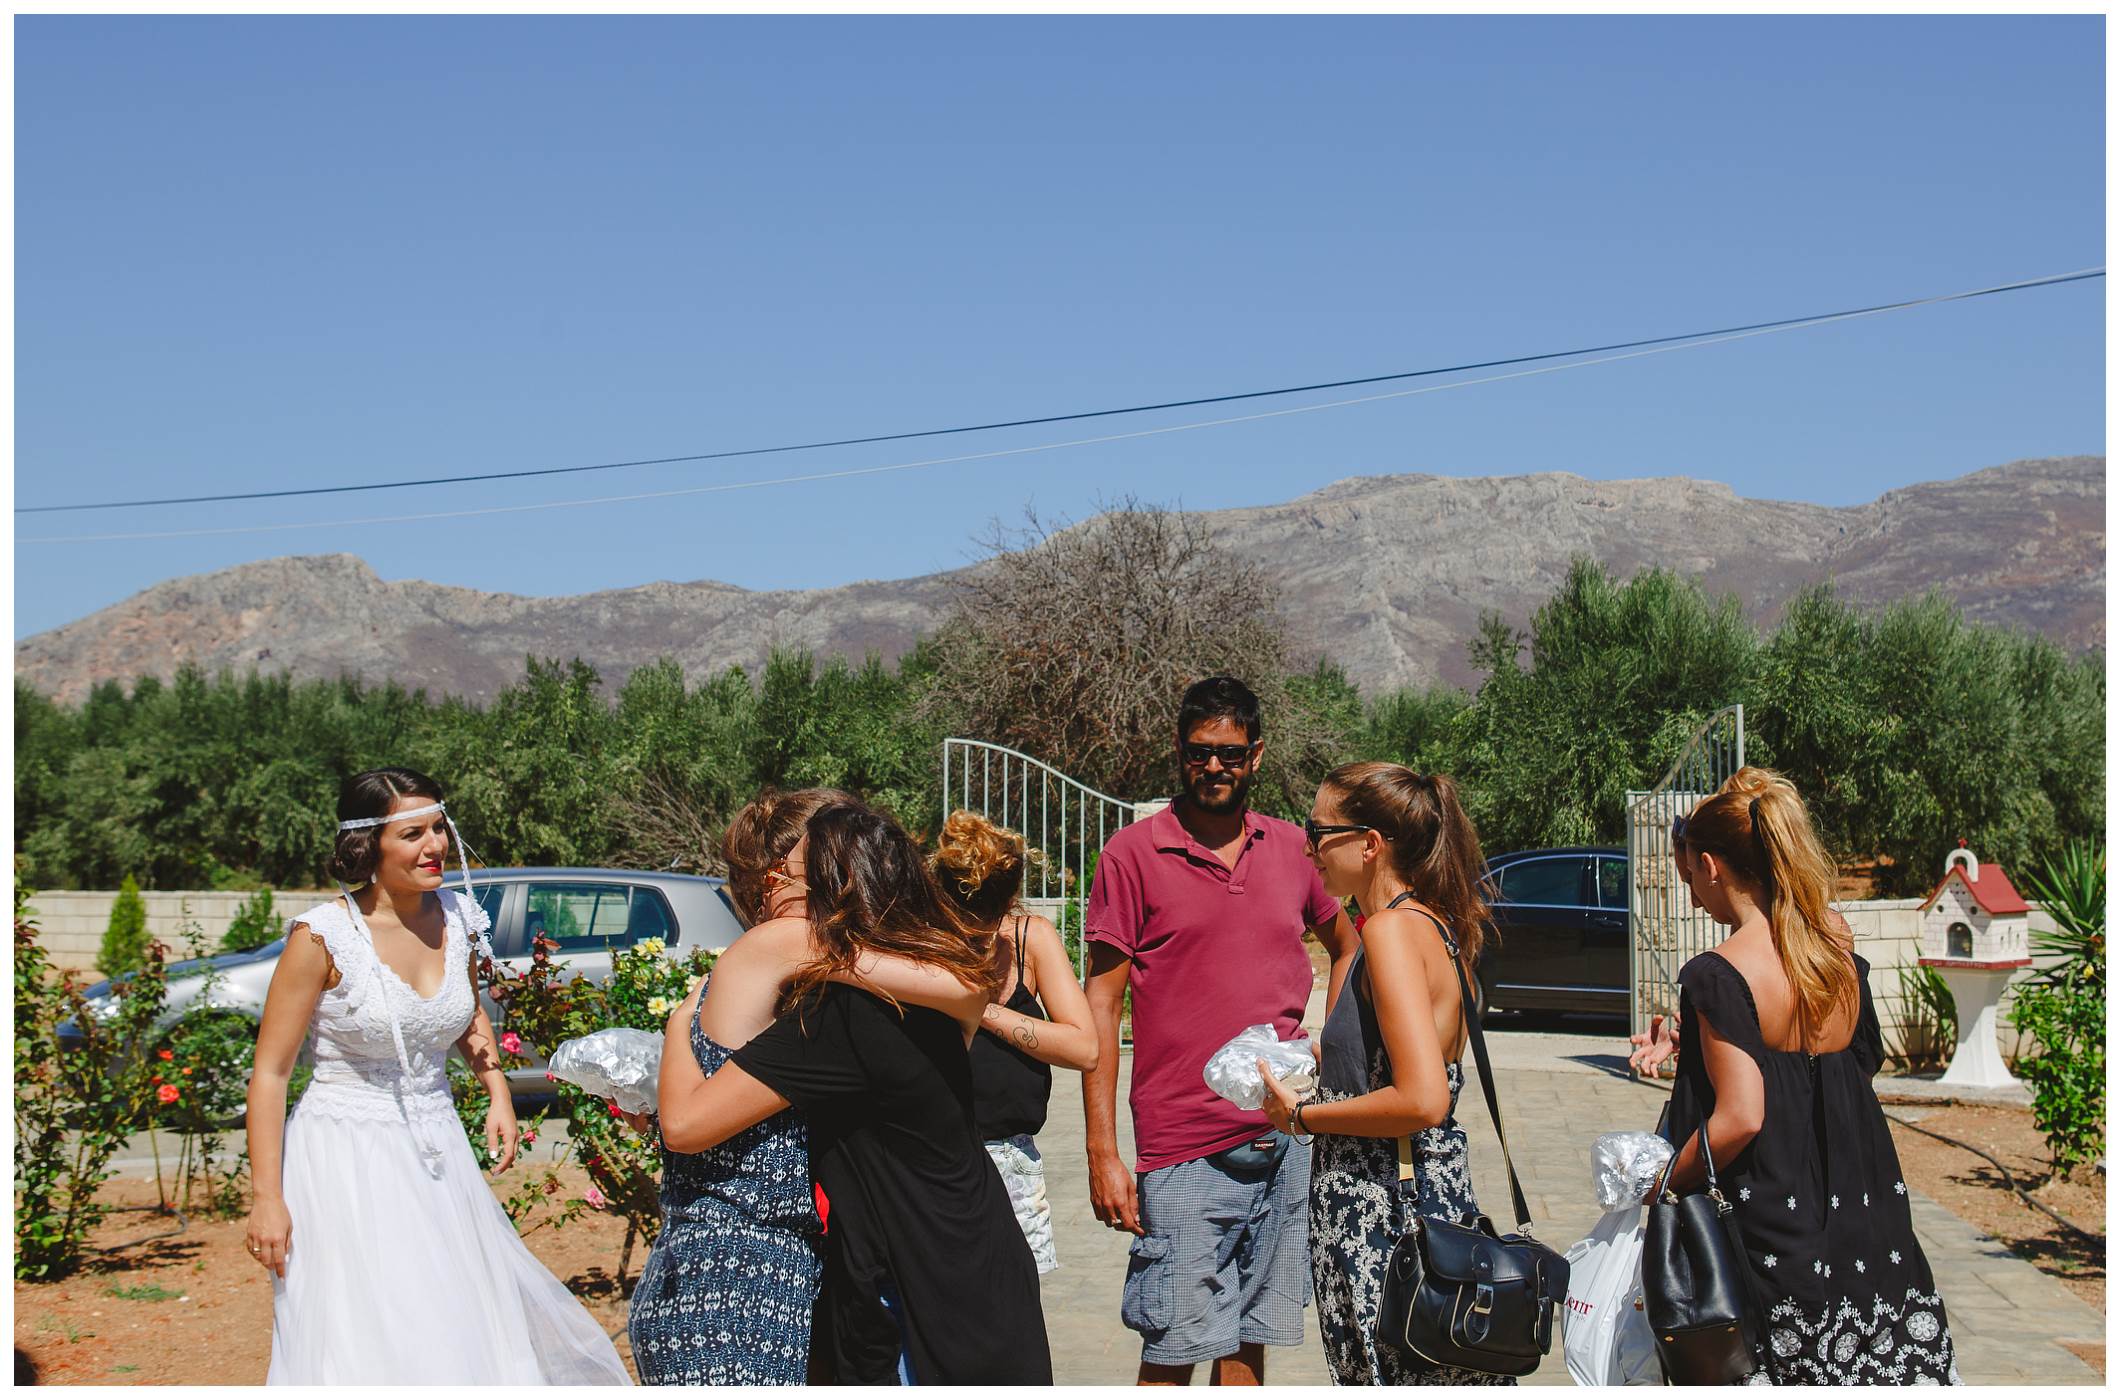 φωτογραφιες γαμου Αθηνα,φωτογραφίες γάμου Αθήνα